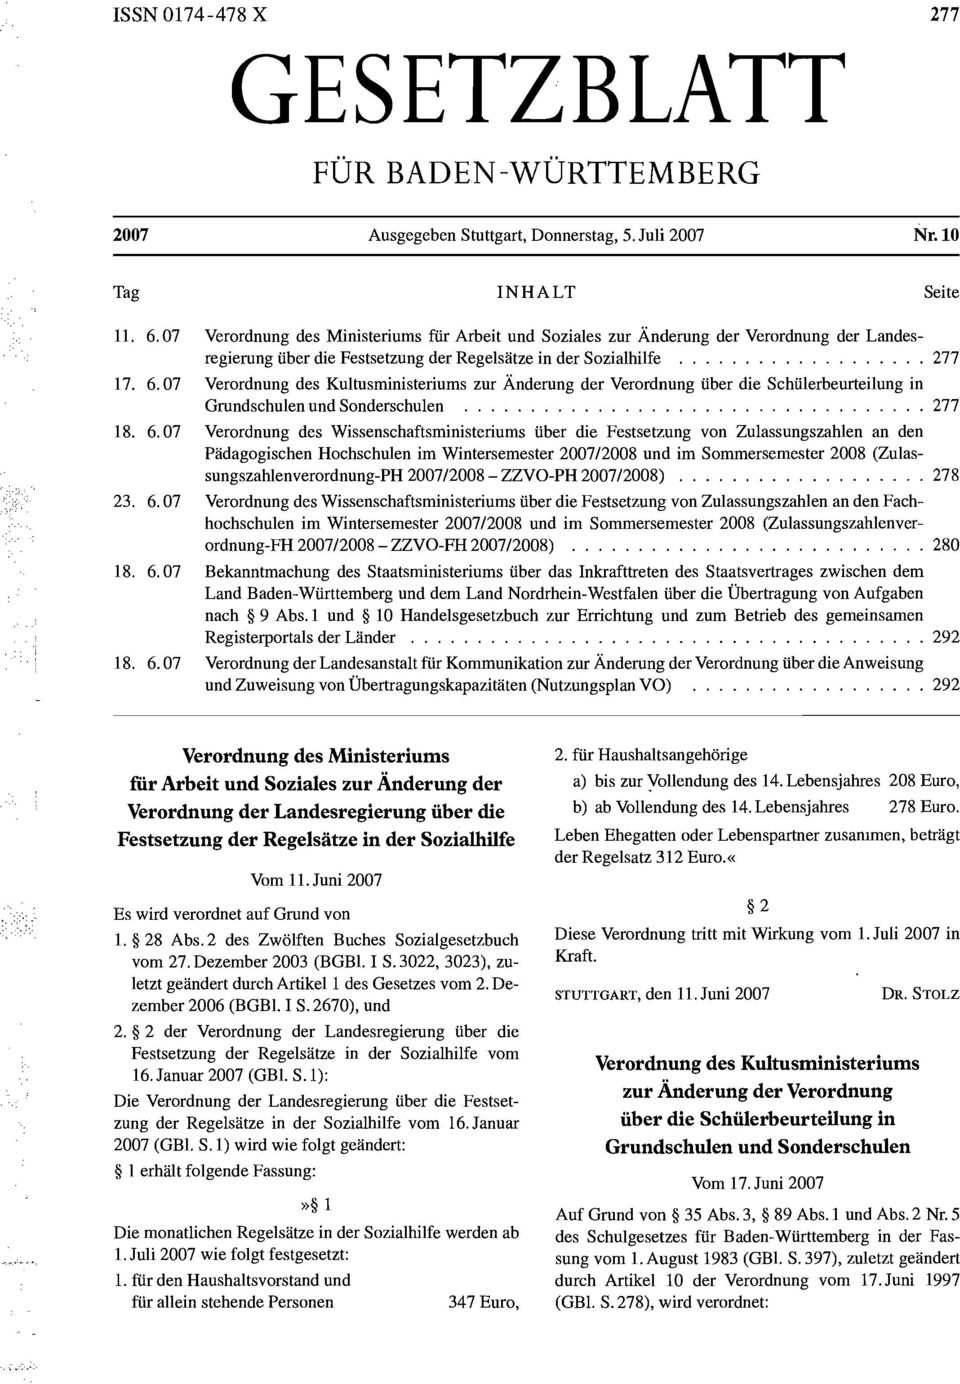 7 Verordnung des Kultusministeriums zur Änderung der Verordnung über die Schülerbeurteilung in Grundschulen und Sonderschulen... 277 18. 6.